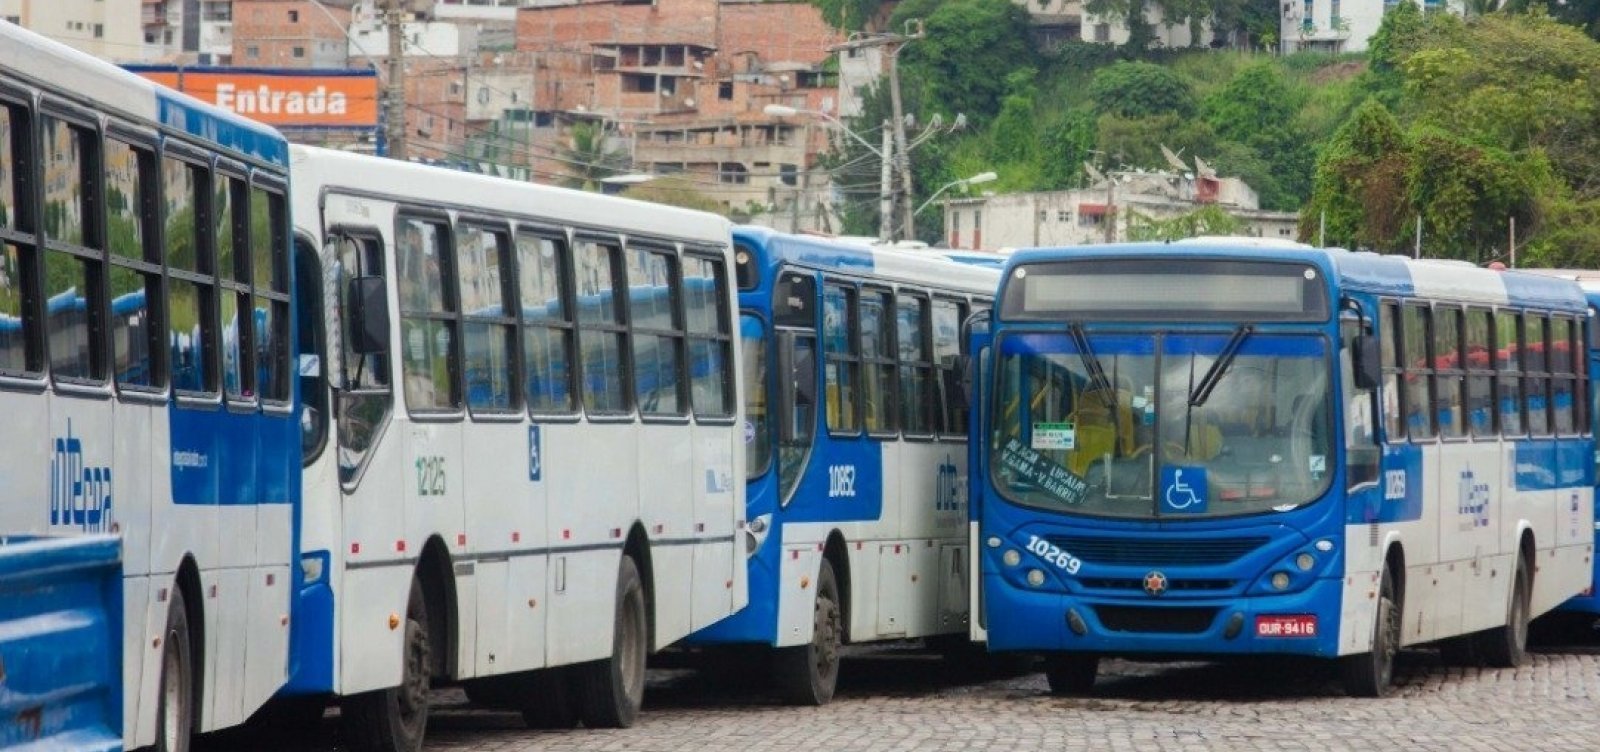 Assinado na madrugada, acordo põe fim às paralisações de ônibus em Salvador